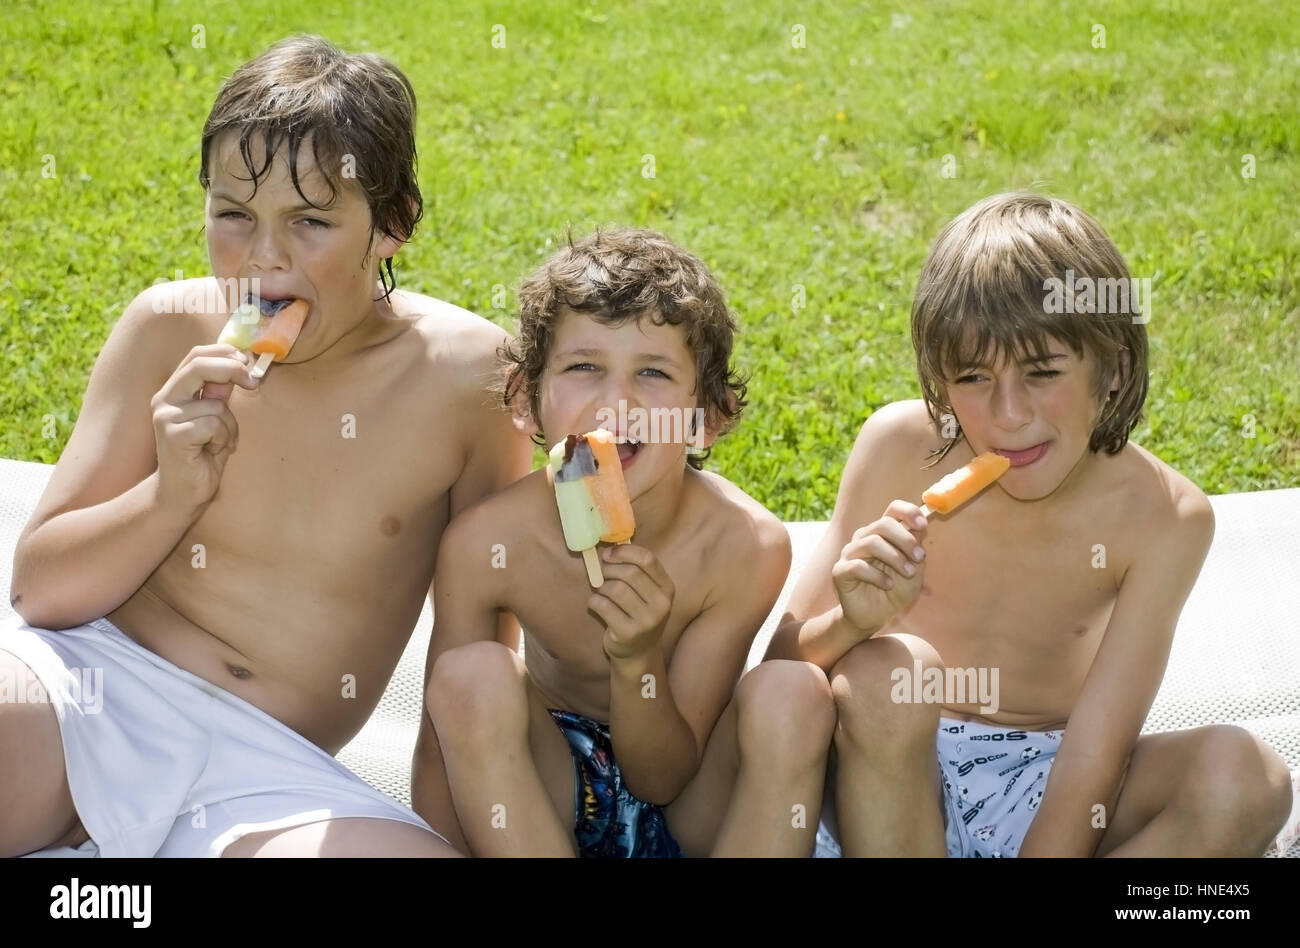 Model release, Drei Buben essen Stieleis - boys eating ice lolly Stock Photo